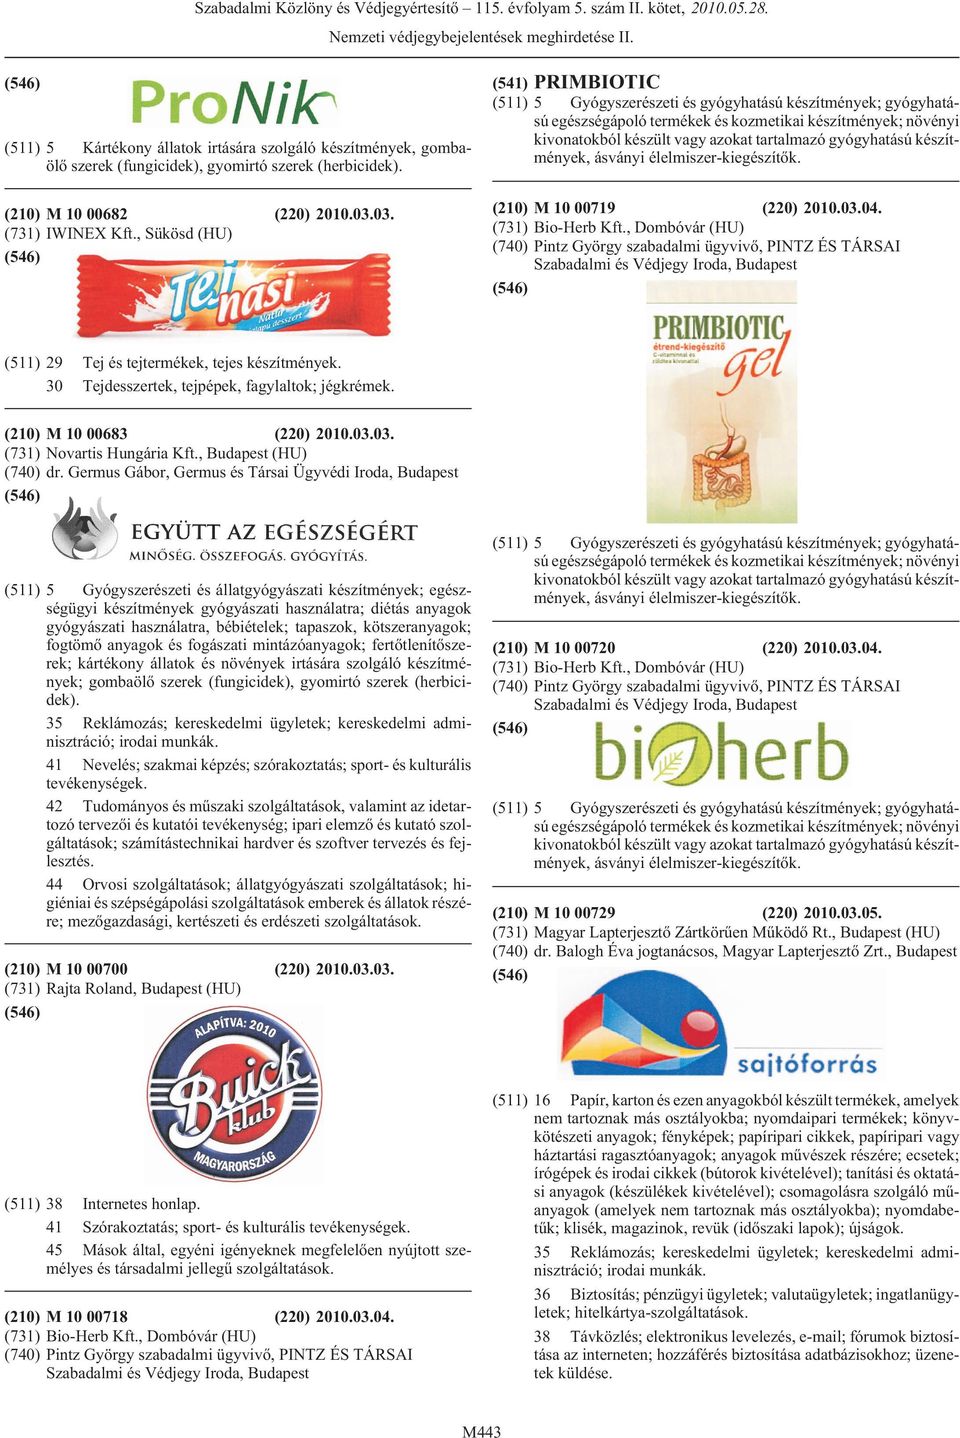 gyógyhatású készítmények, ásványi élelmiszer-kiegészítõk. (210) M 10 00719 (220) 2010.03.04. (731) Bio-Herb Kft.